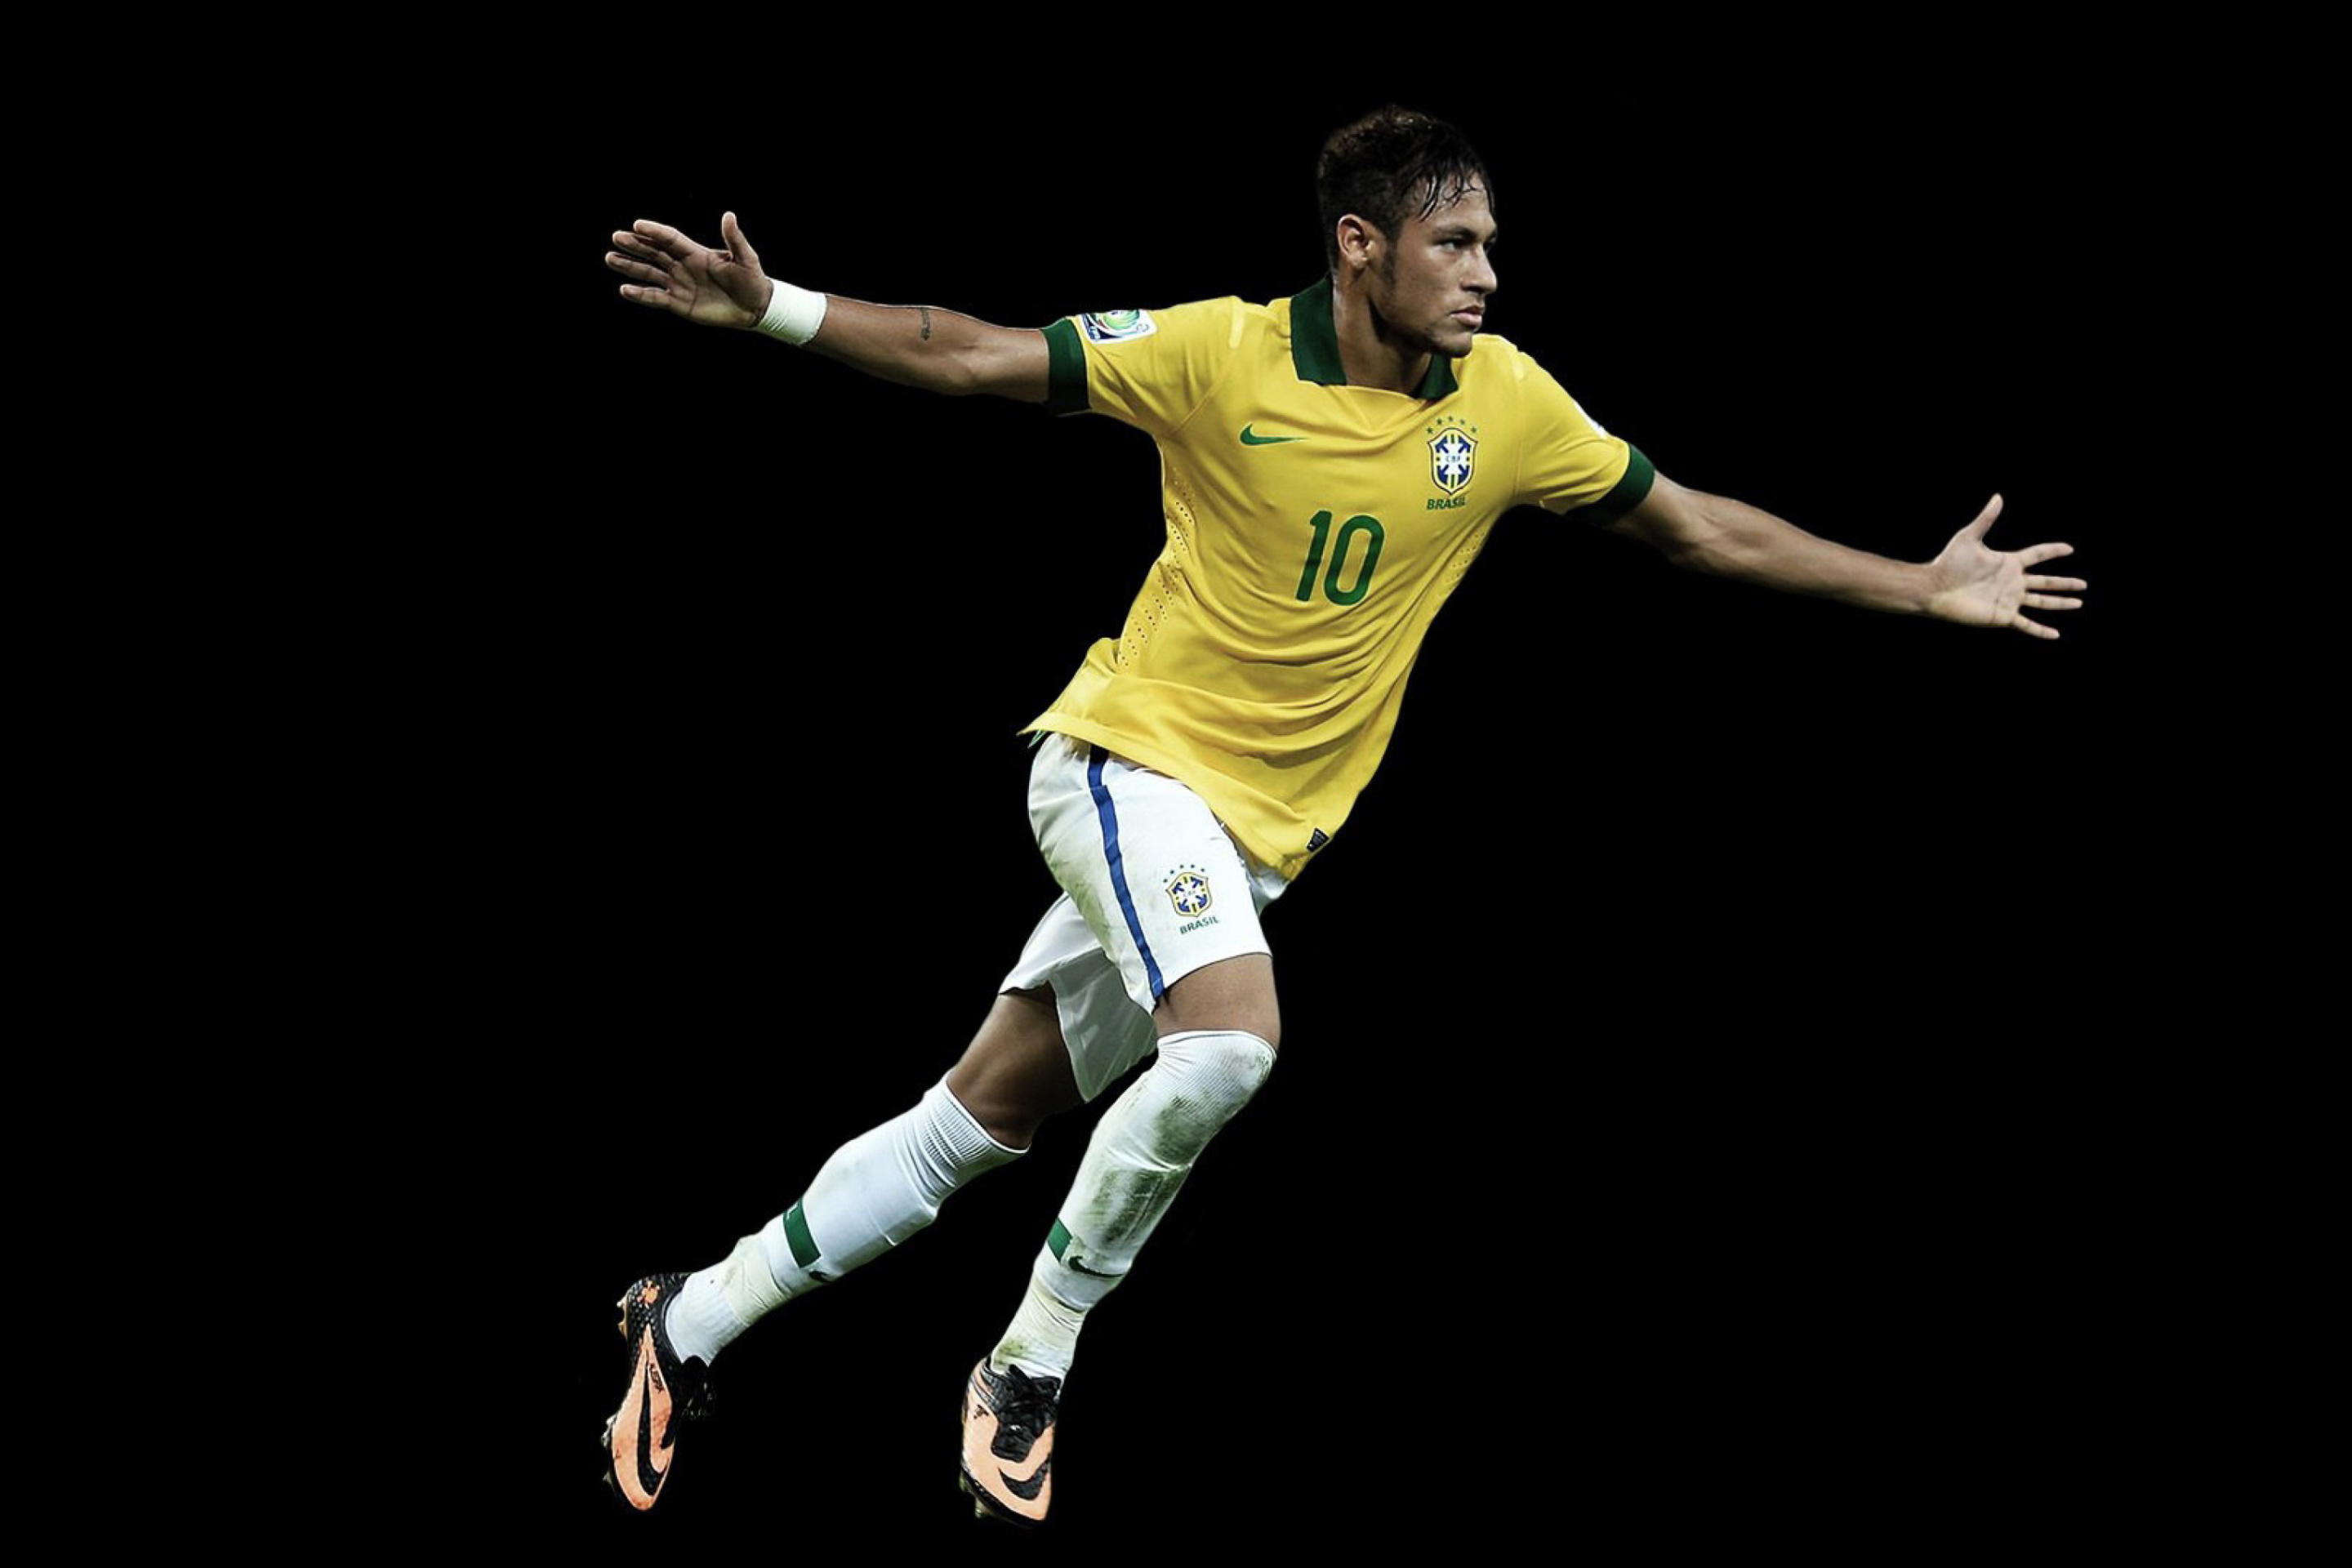 Neymar Brazil Football Player wallpaper 2880x1920